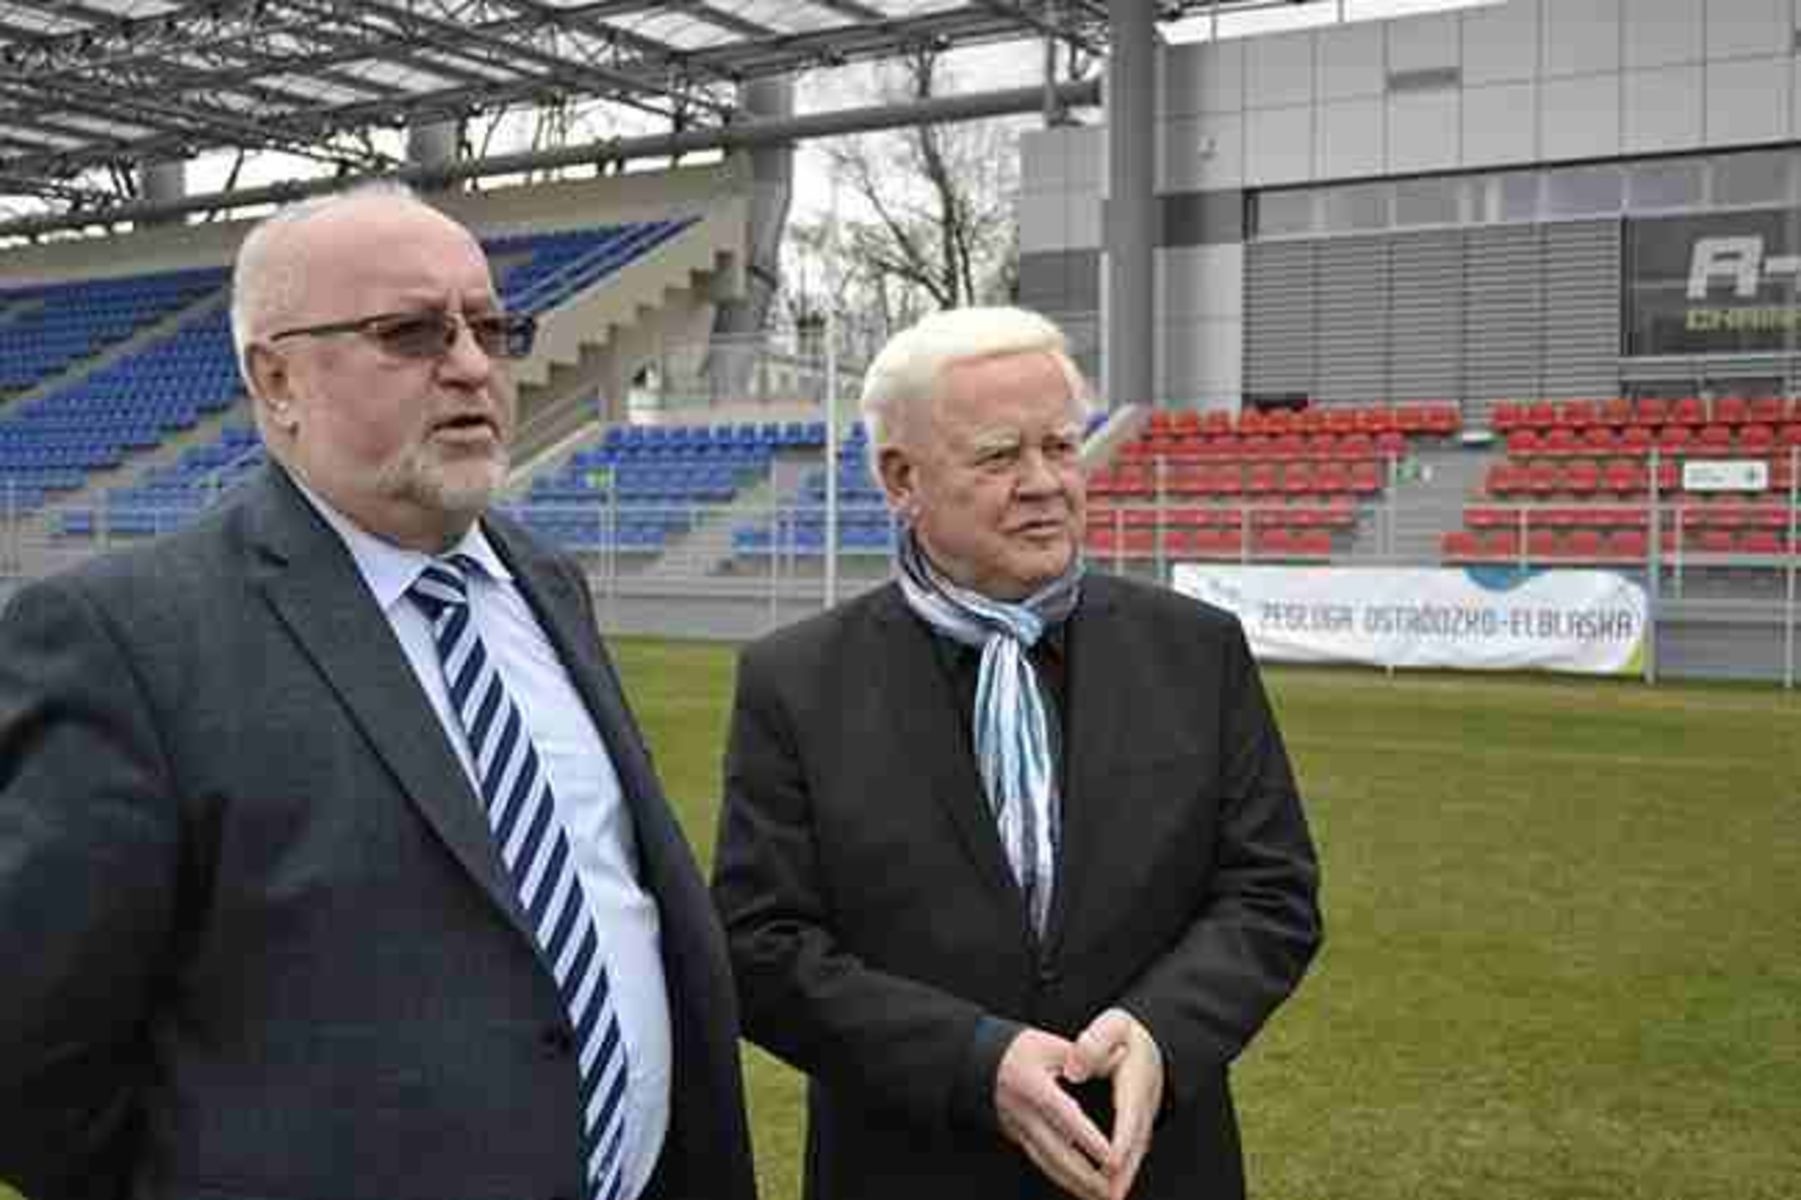 Burmistrz Ostródy Olgierd Dąbrowski i Heinz Keppman, przedstawiciel Borussi Dortmund, na ostródzkim stadionie. Fot. ostroda2012.pl